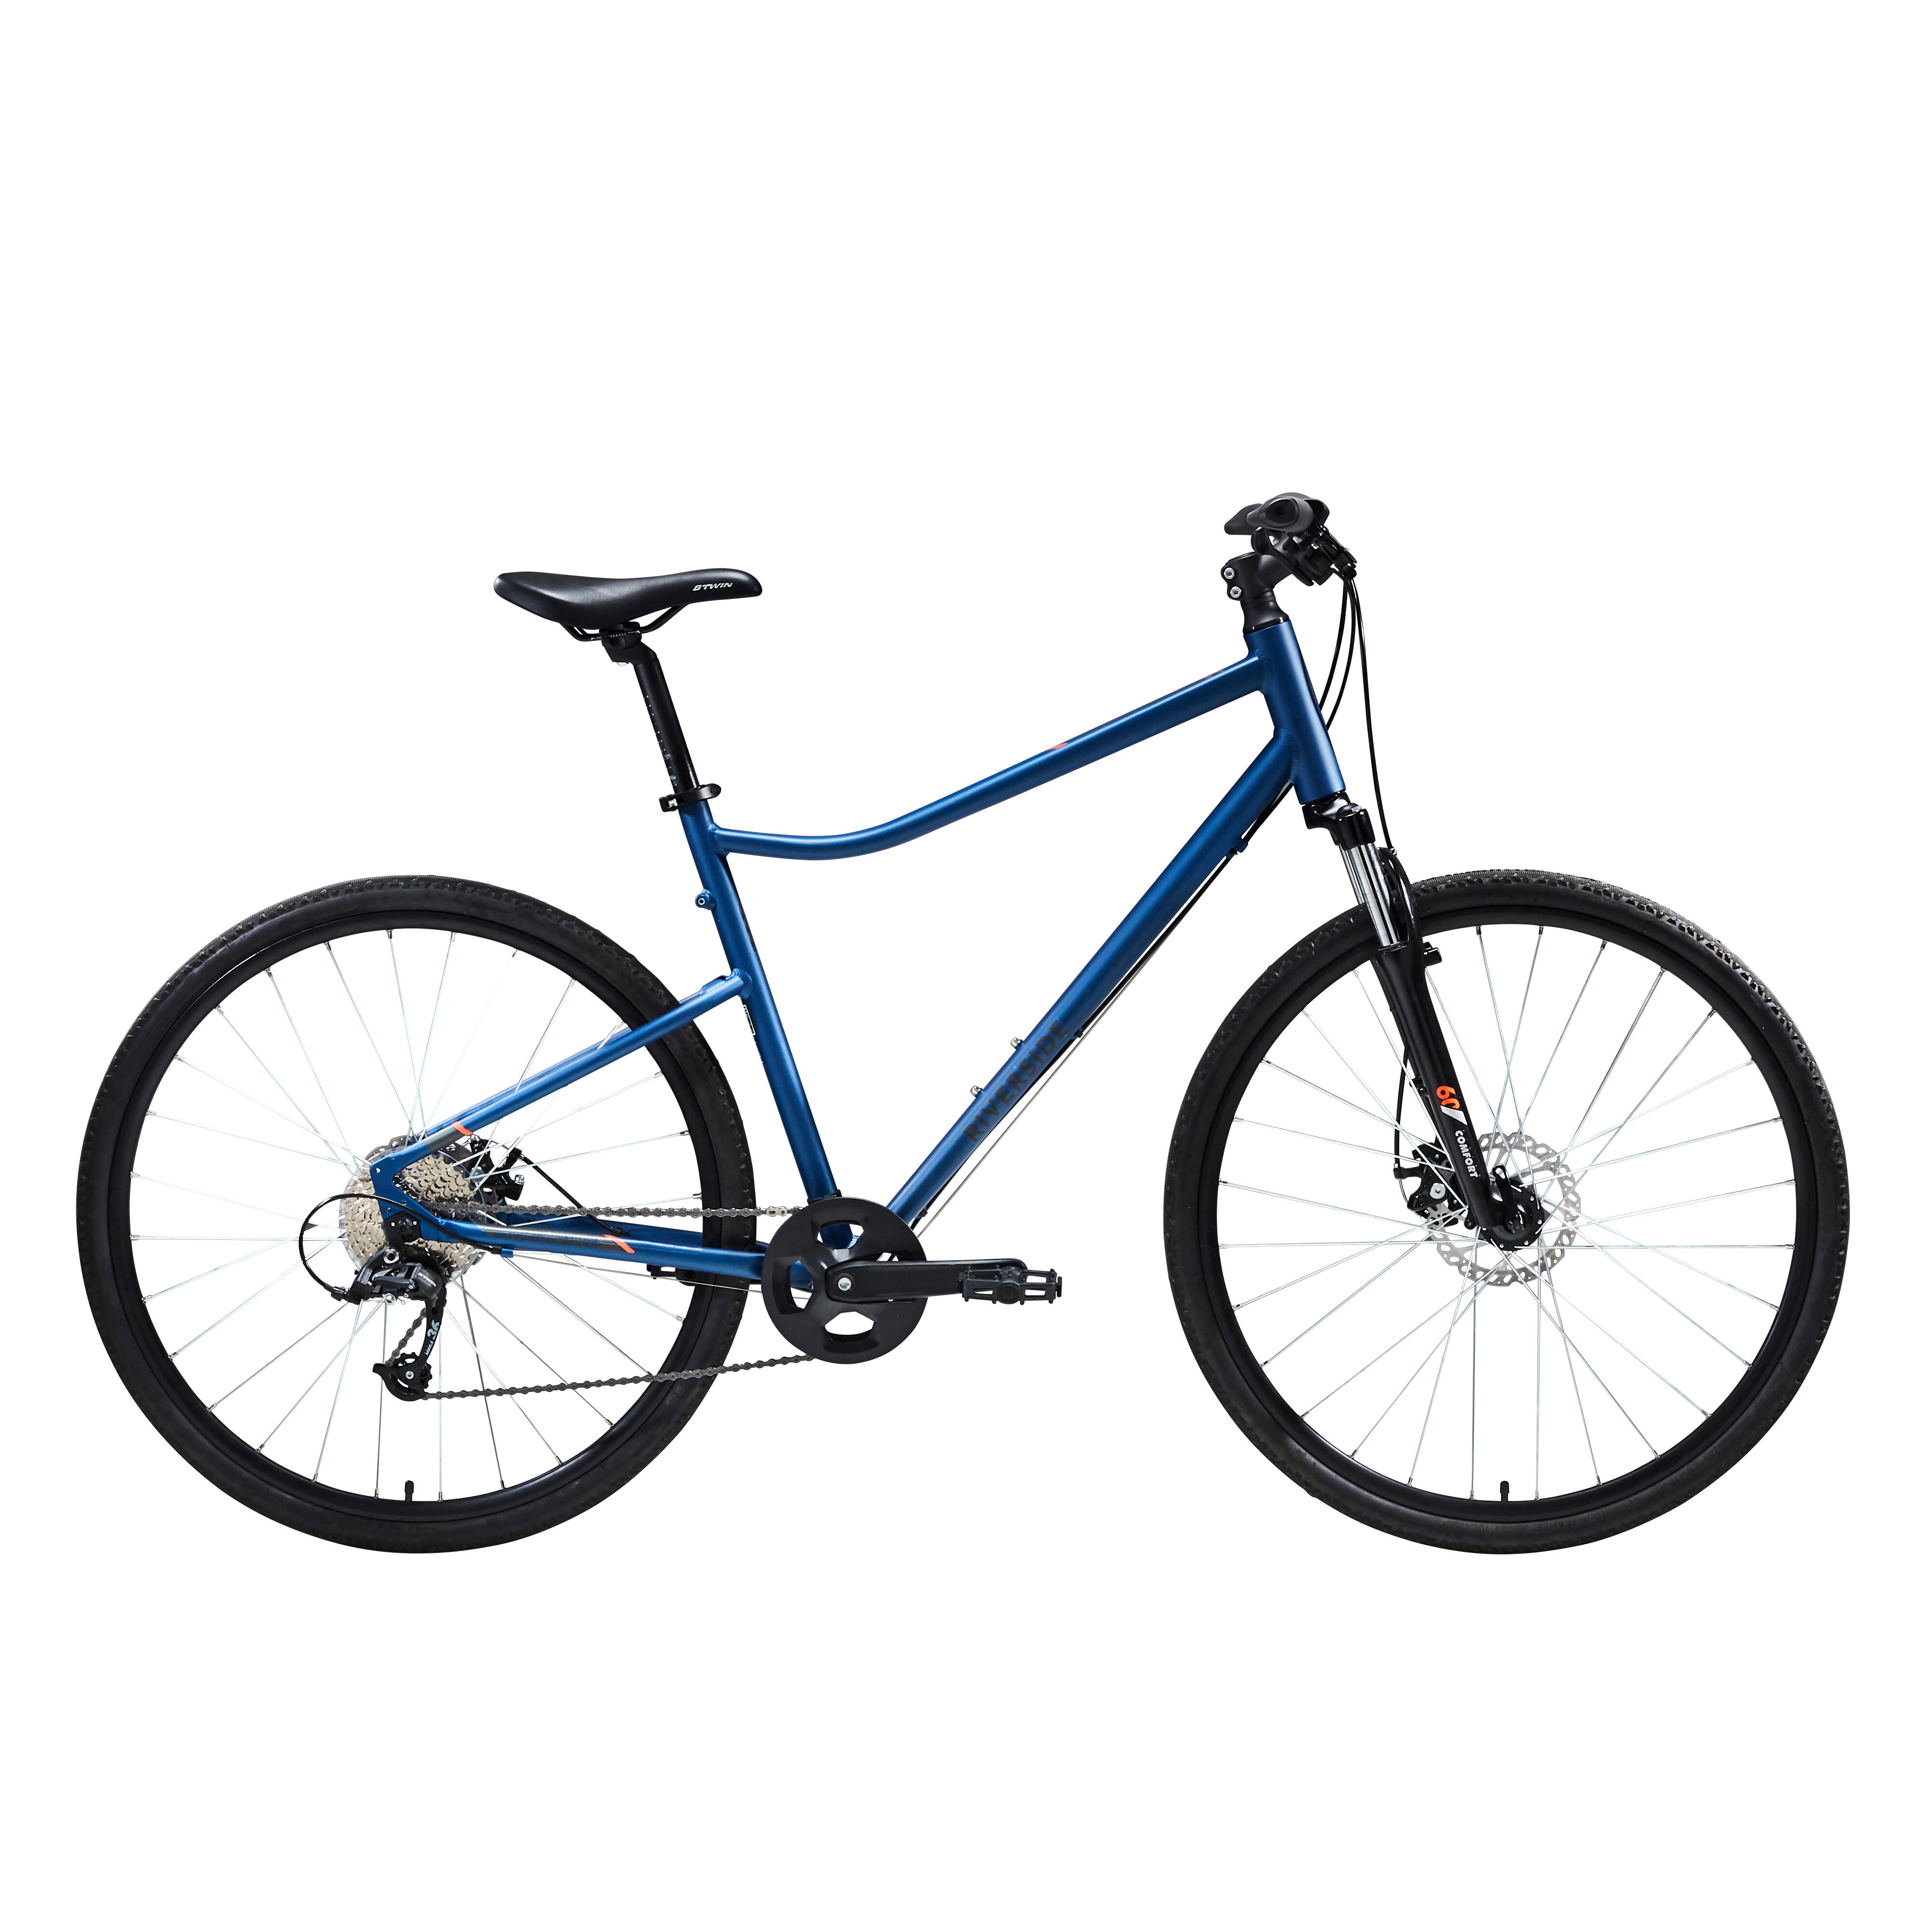 Bicicletă polivalentă Riverside 500 Albastru RIVERSIDE decathlon.ro